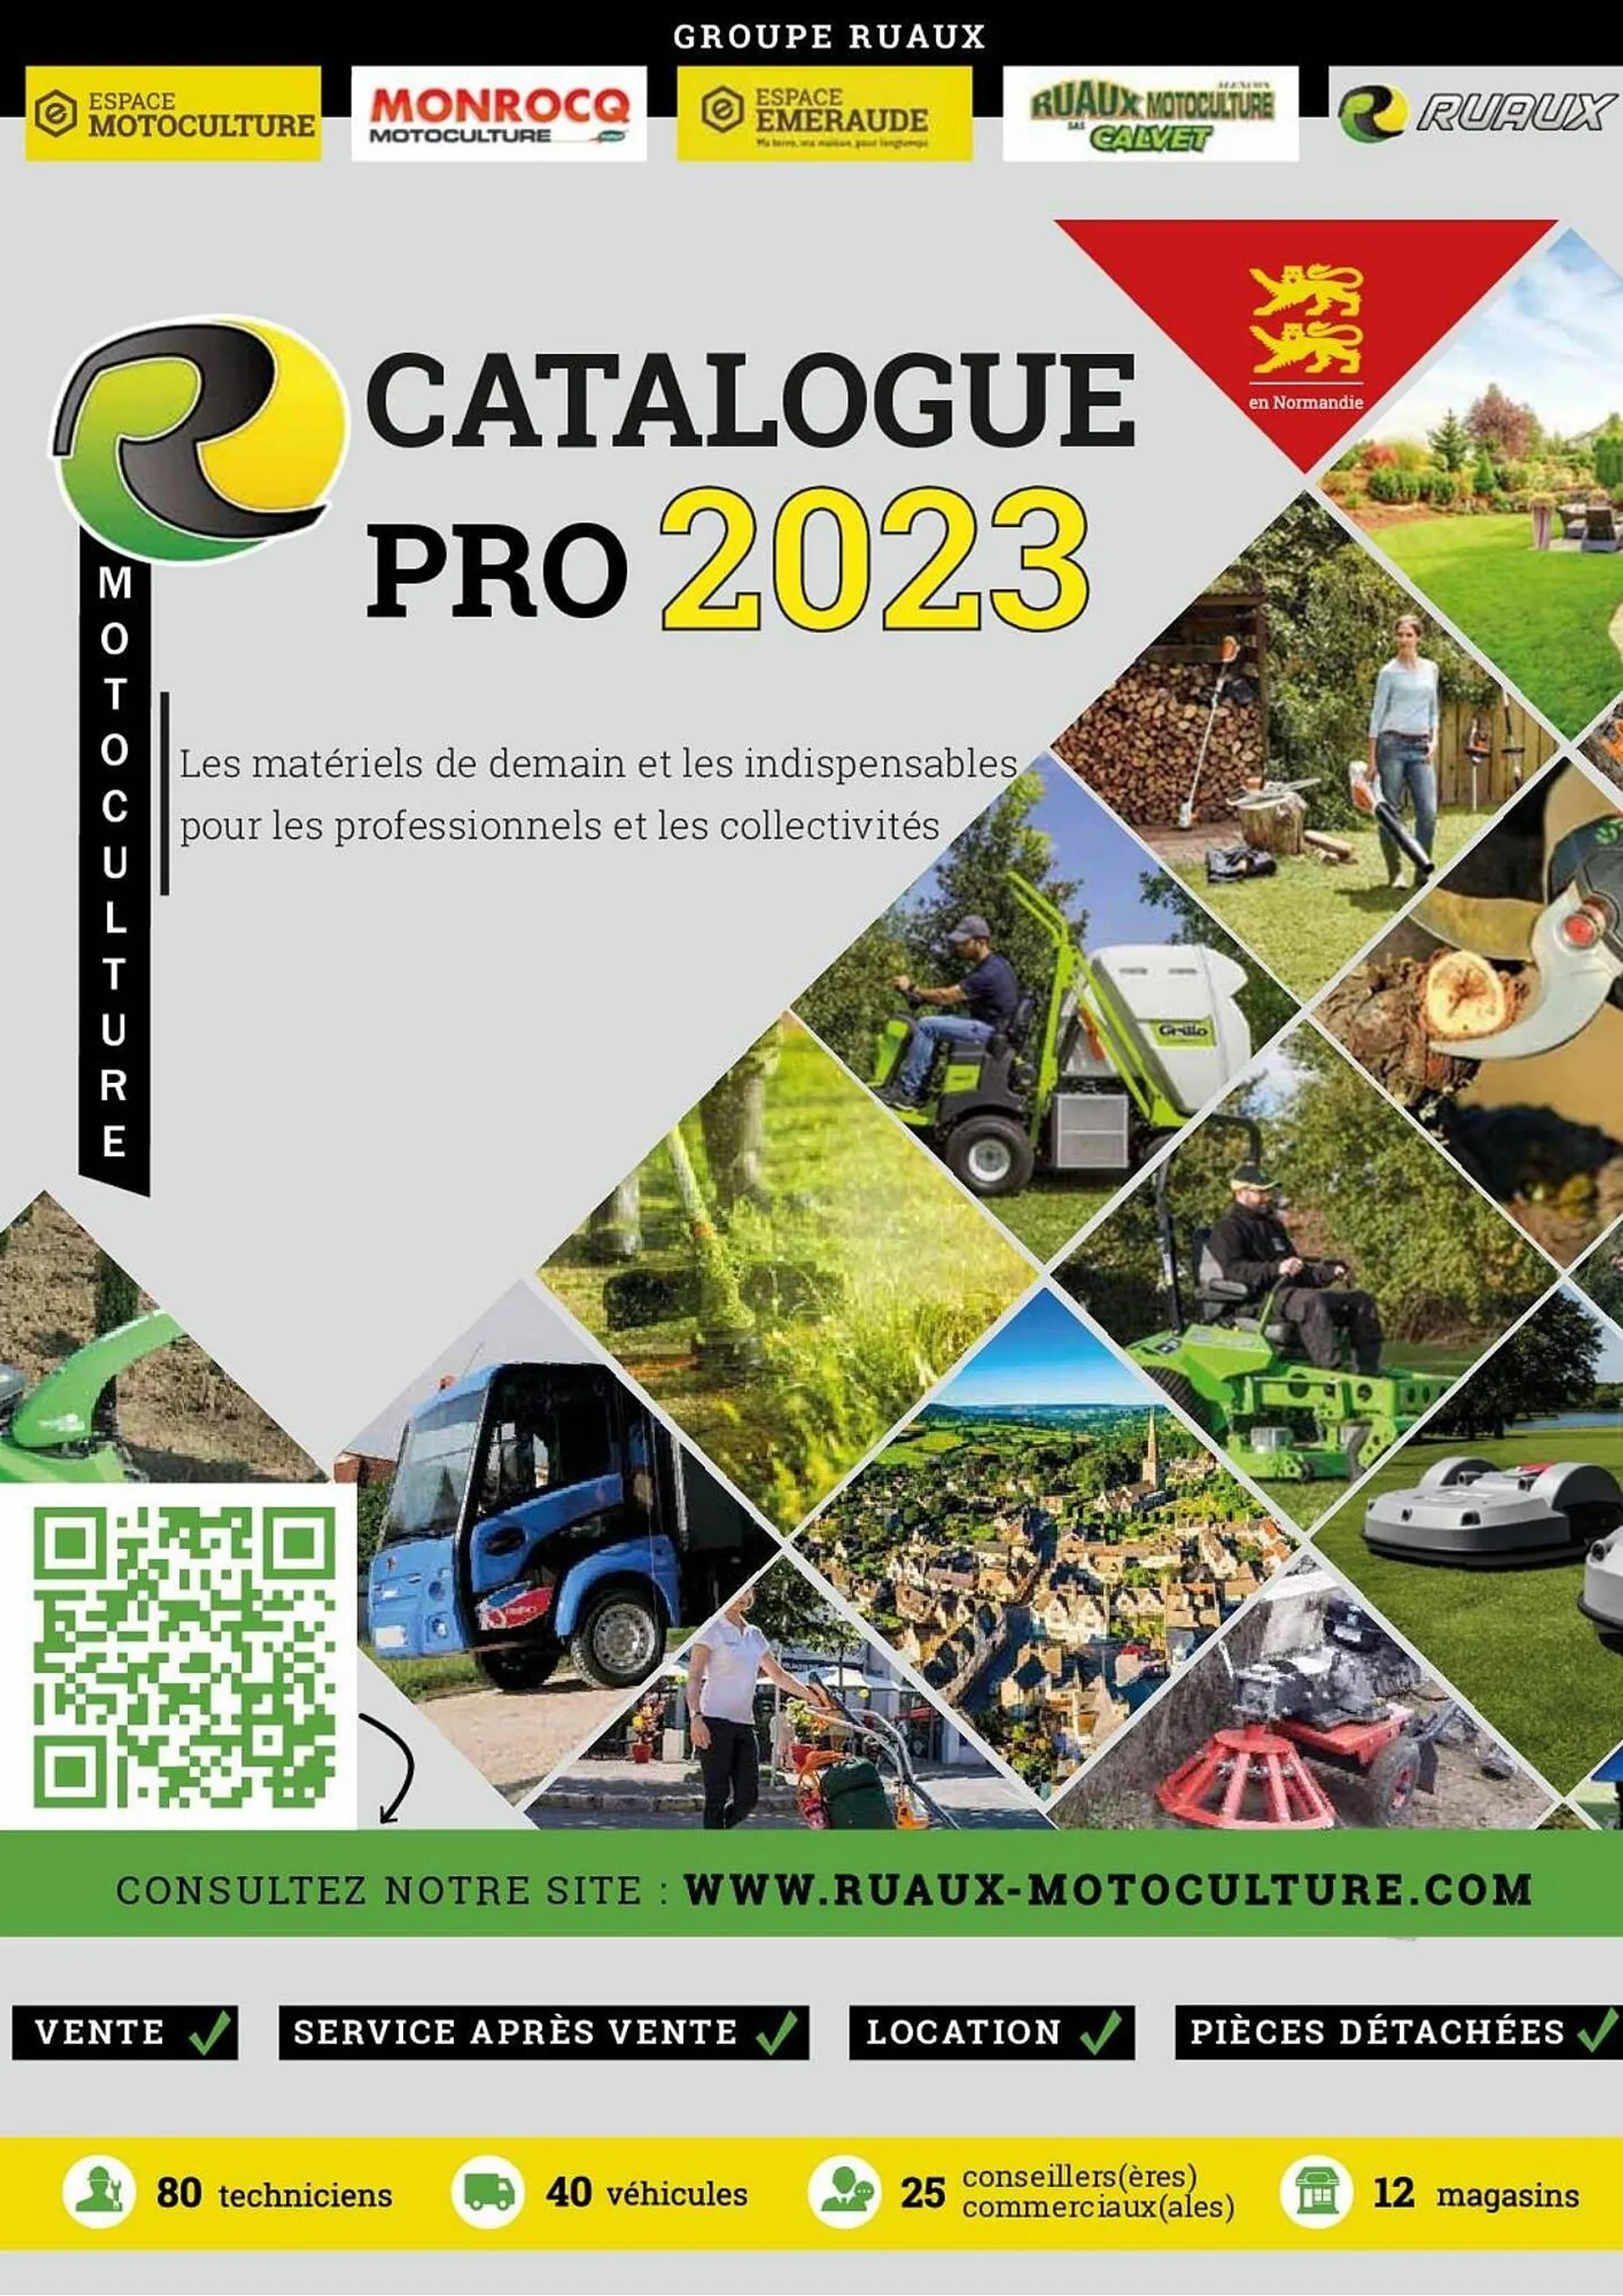 Catalogue Espace emeraude - 1